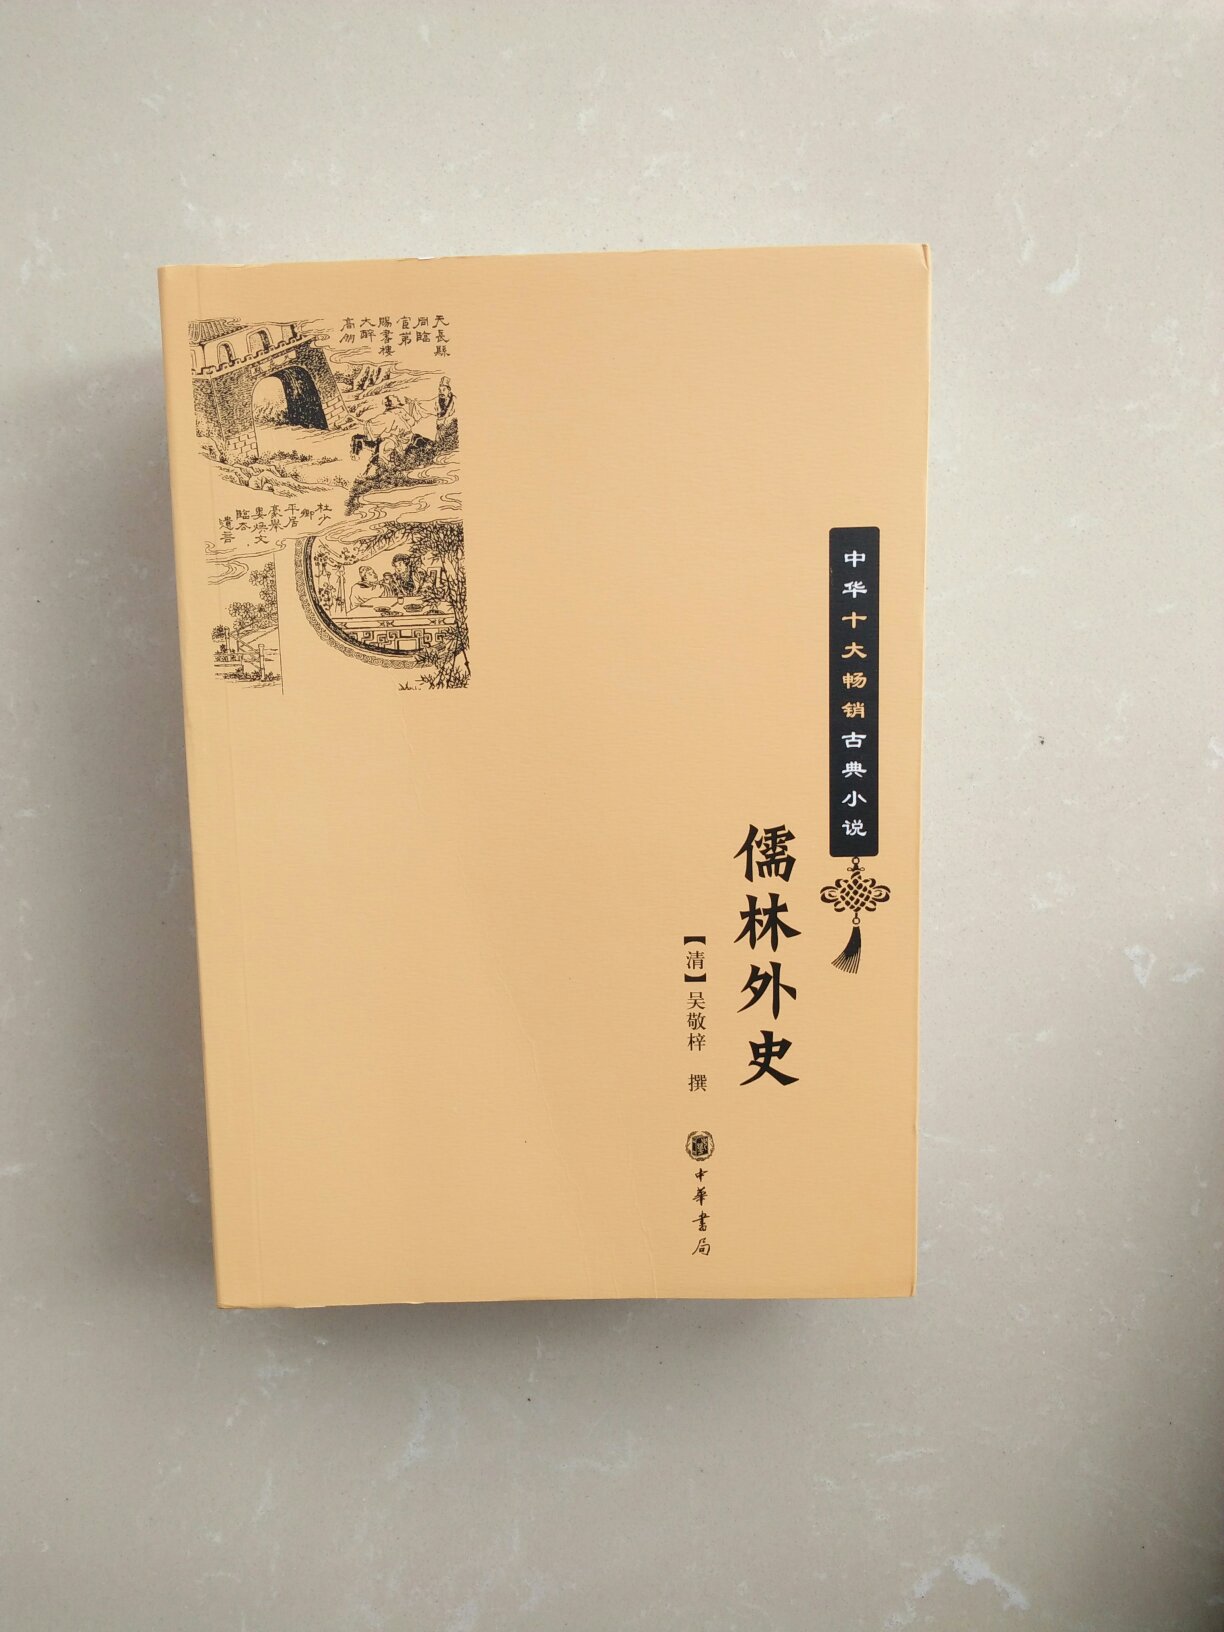 很喜欢中国古典文学。《儒林外史》是清朝中叶著名的讽刺小说。自营，发货很快，像我老家比较偏僻的地方，也是，第二天就送到了。碰巧下雨了，快递小哥还是送上门的呢。